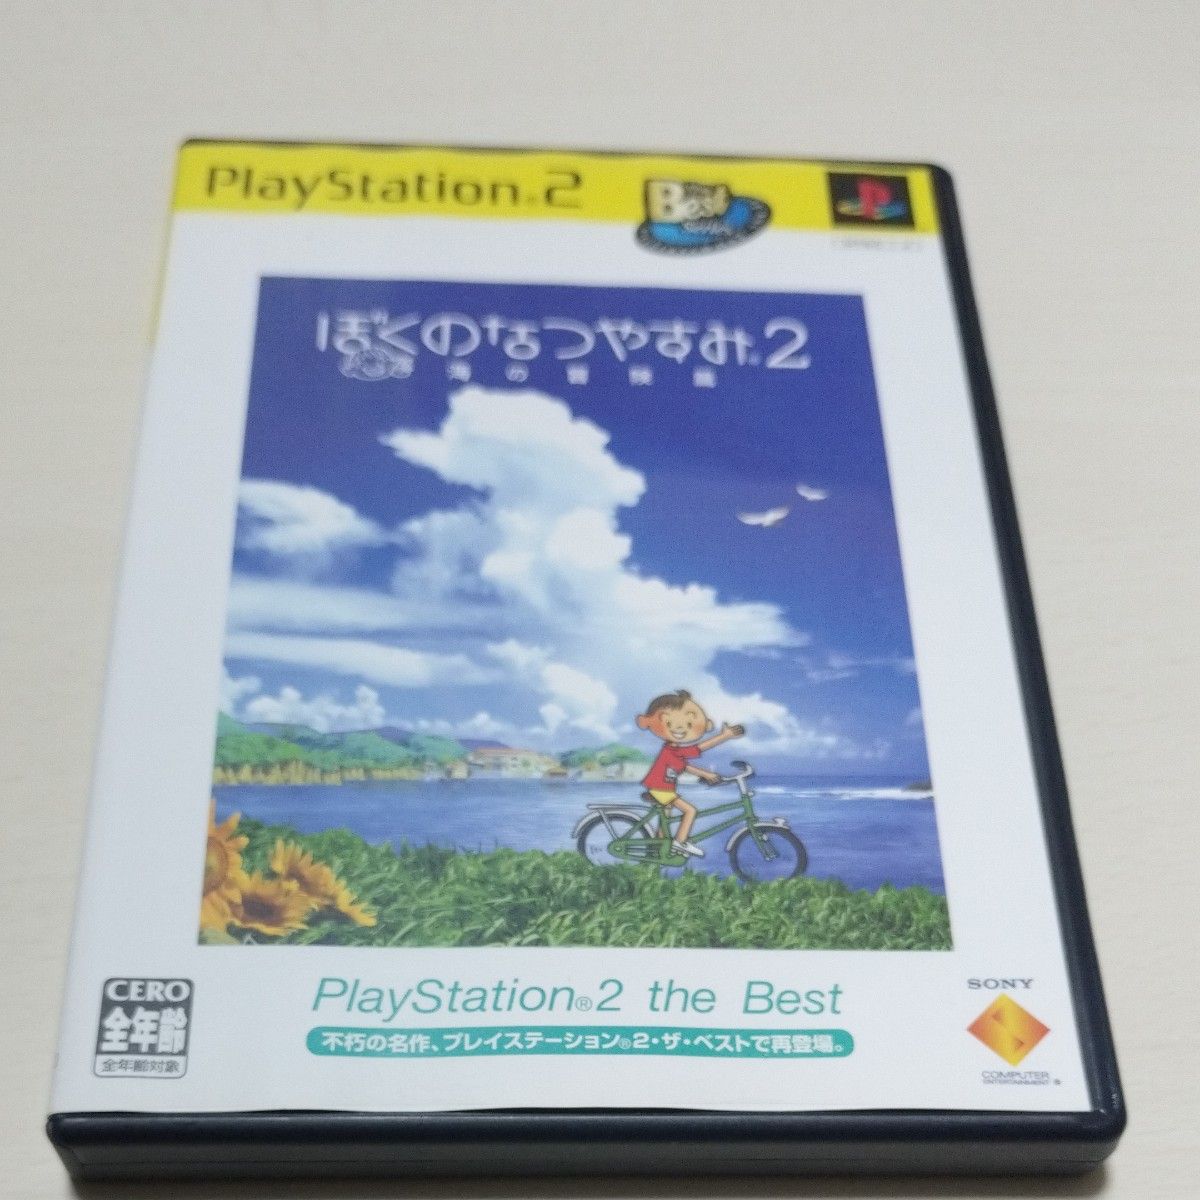 ぼくのなつやすみ2 海の冒険篇 PlayStation 2 the Best